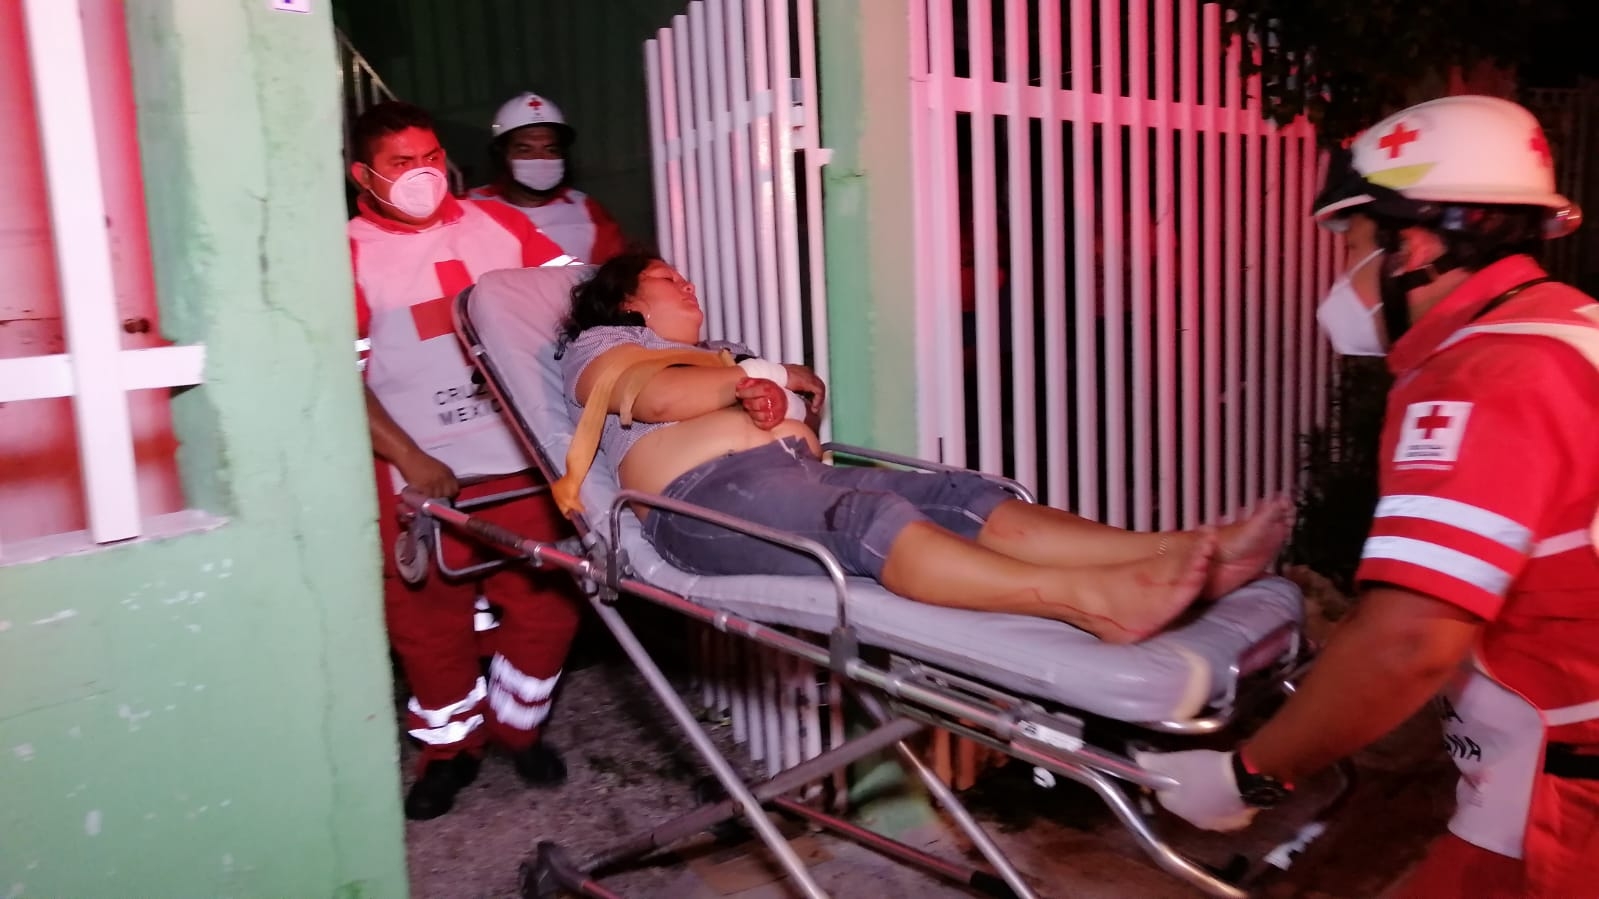 Ciudad del Carmen, el municipio más violento de Campeche: SSP